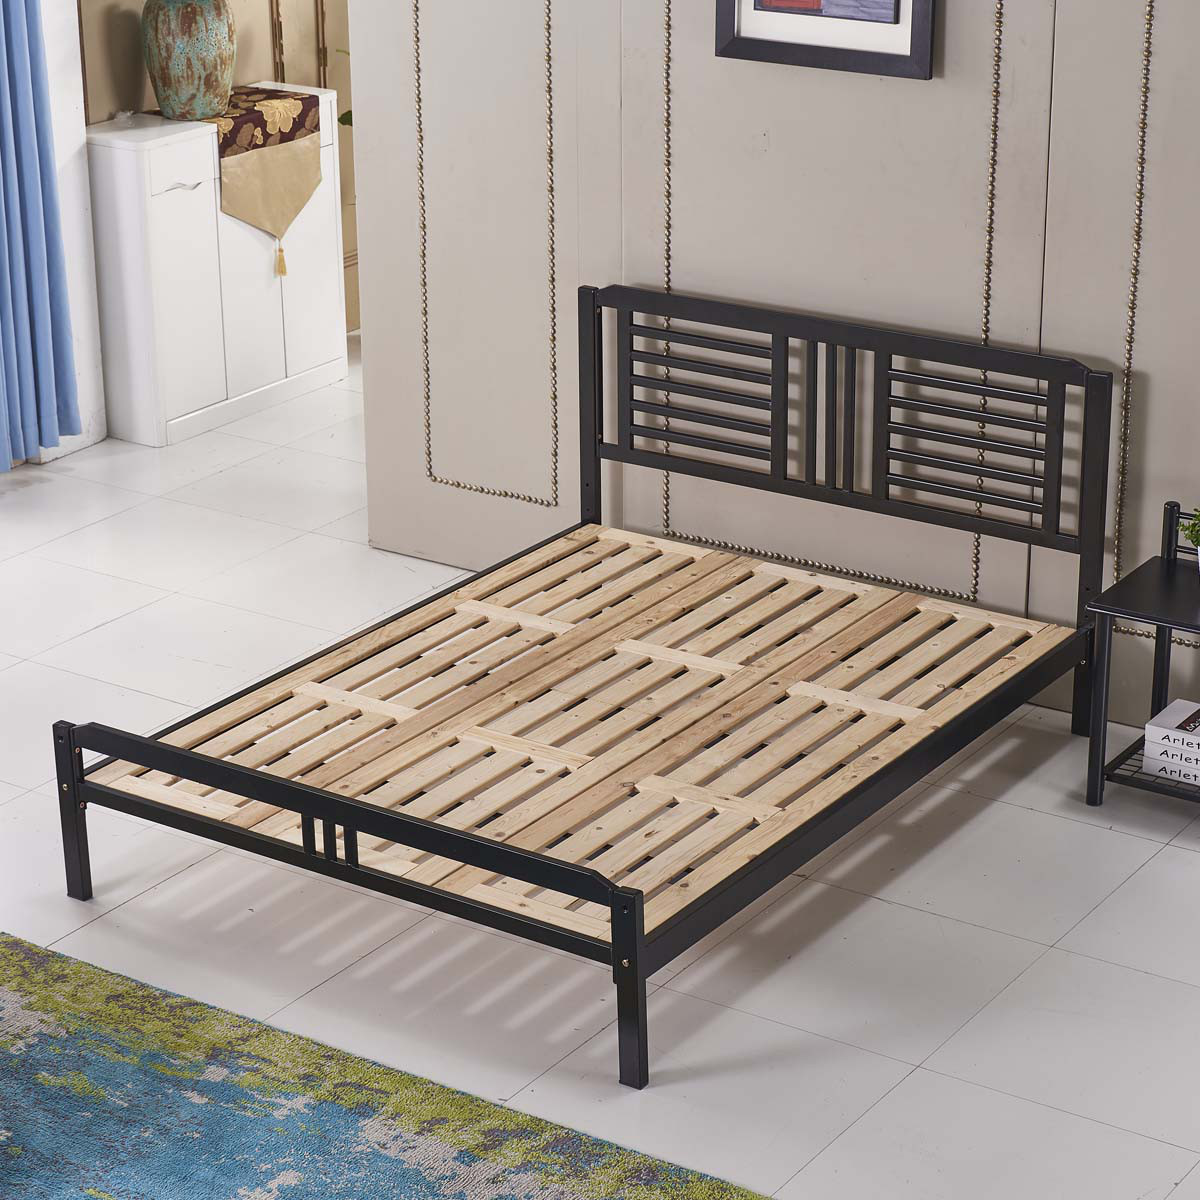 叠亿 铁艺床 铁架床 铁床 实木床板 加厚钢管 双人床 卧室床 卧室家具